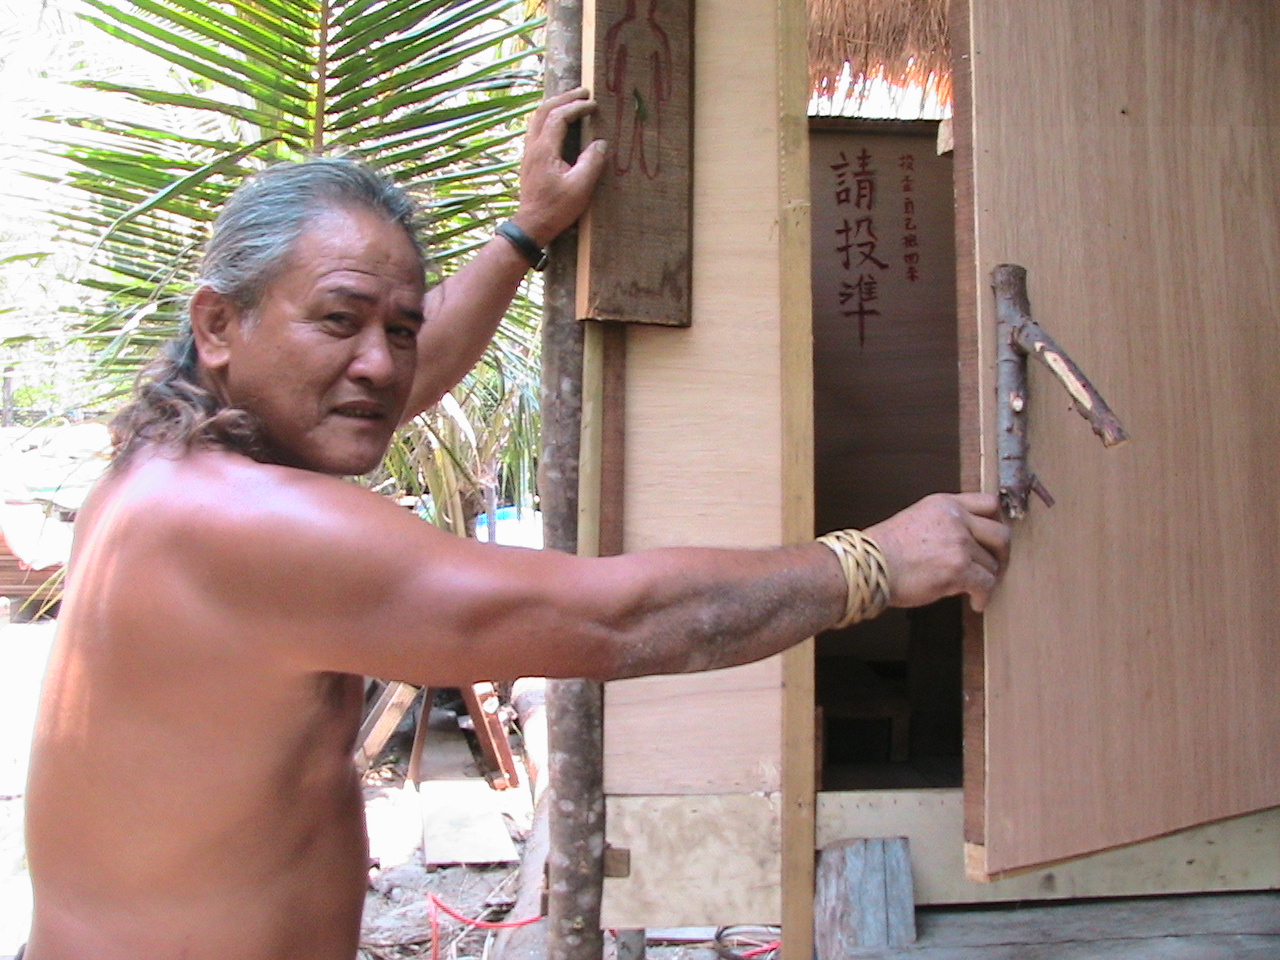 十八般武藝樣樣俱全的總幹事Lawai,與他「監製」的生態廁所合影。注意樹枝門把。照片提供：大苑